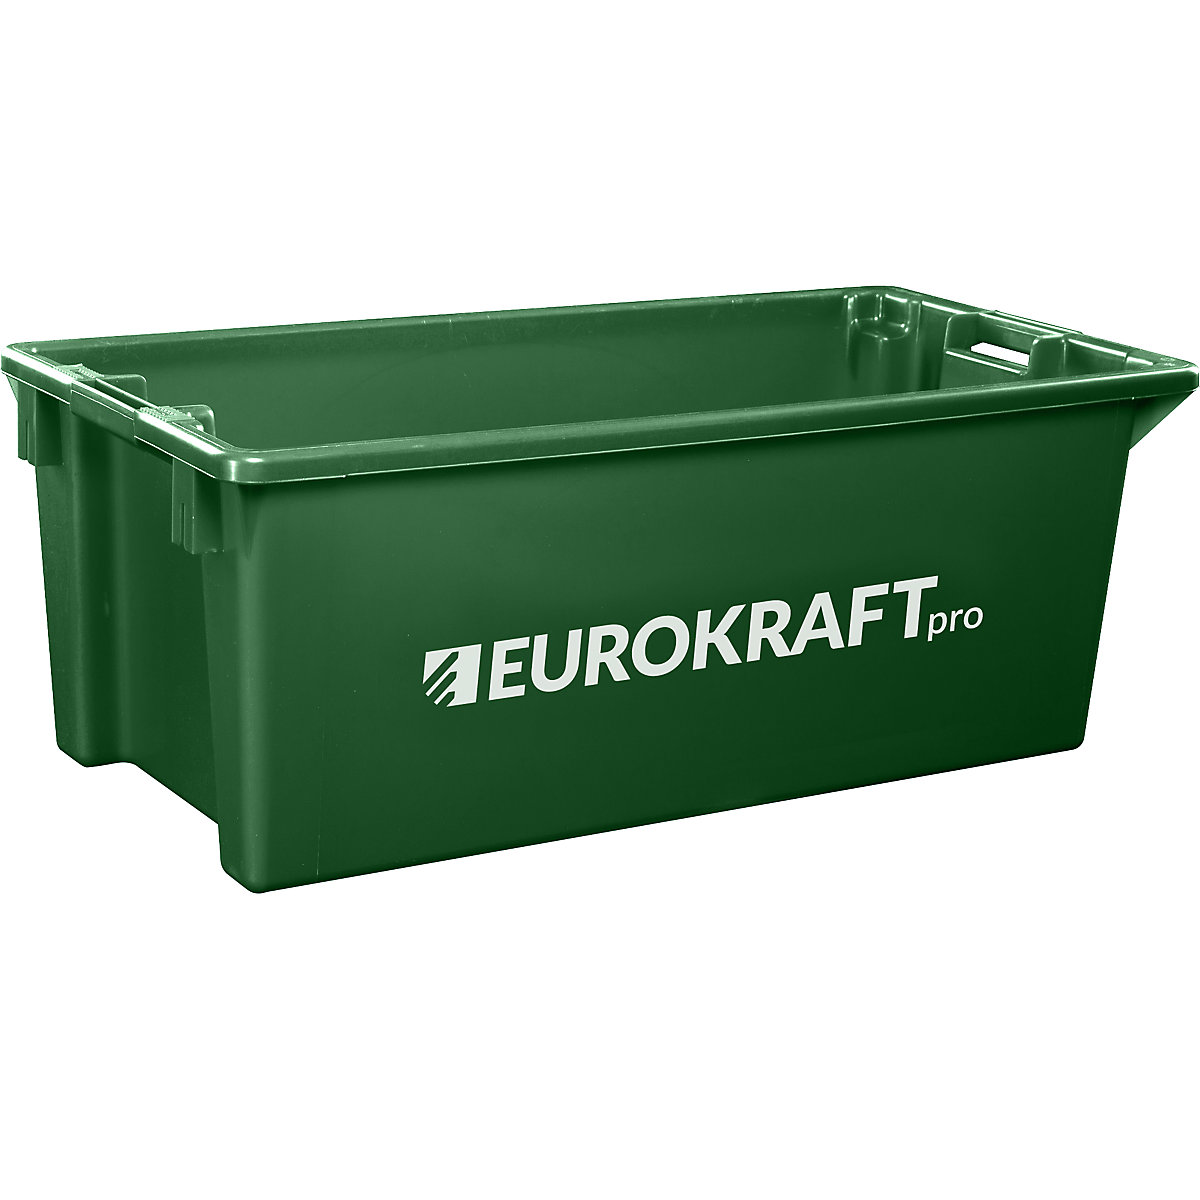 Drehstapelbehälter aus lebensmittelechtem Polypropylen eurokraft pro, Inhalt 13 Liter, VE 4 Stk, Wände und Boden geschlossen, grün